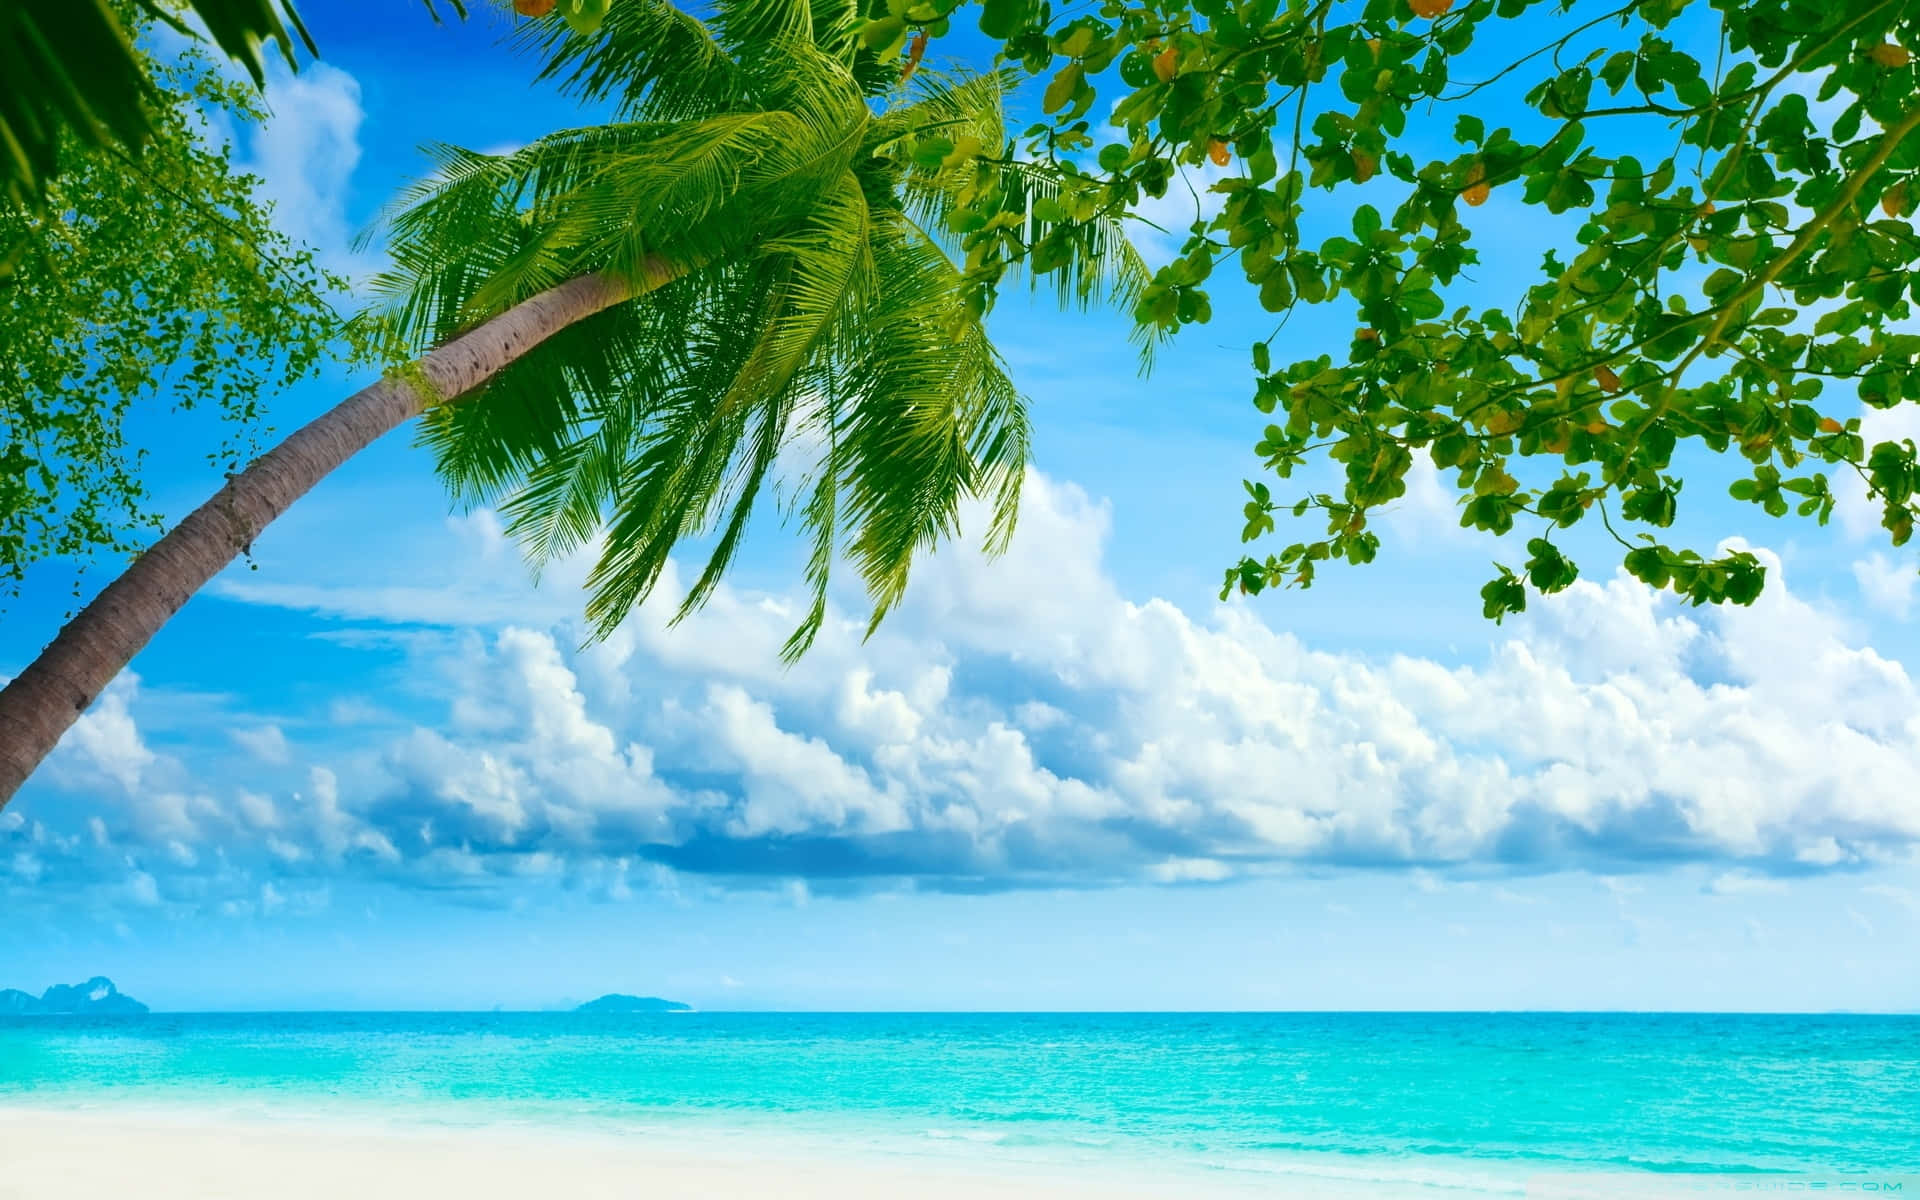 Eineeinfach Atemberaubende Tropische Strandkulisse Mit Strandhütten, Palmen Und Kristallklarem Wasser. Wallpaper